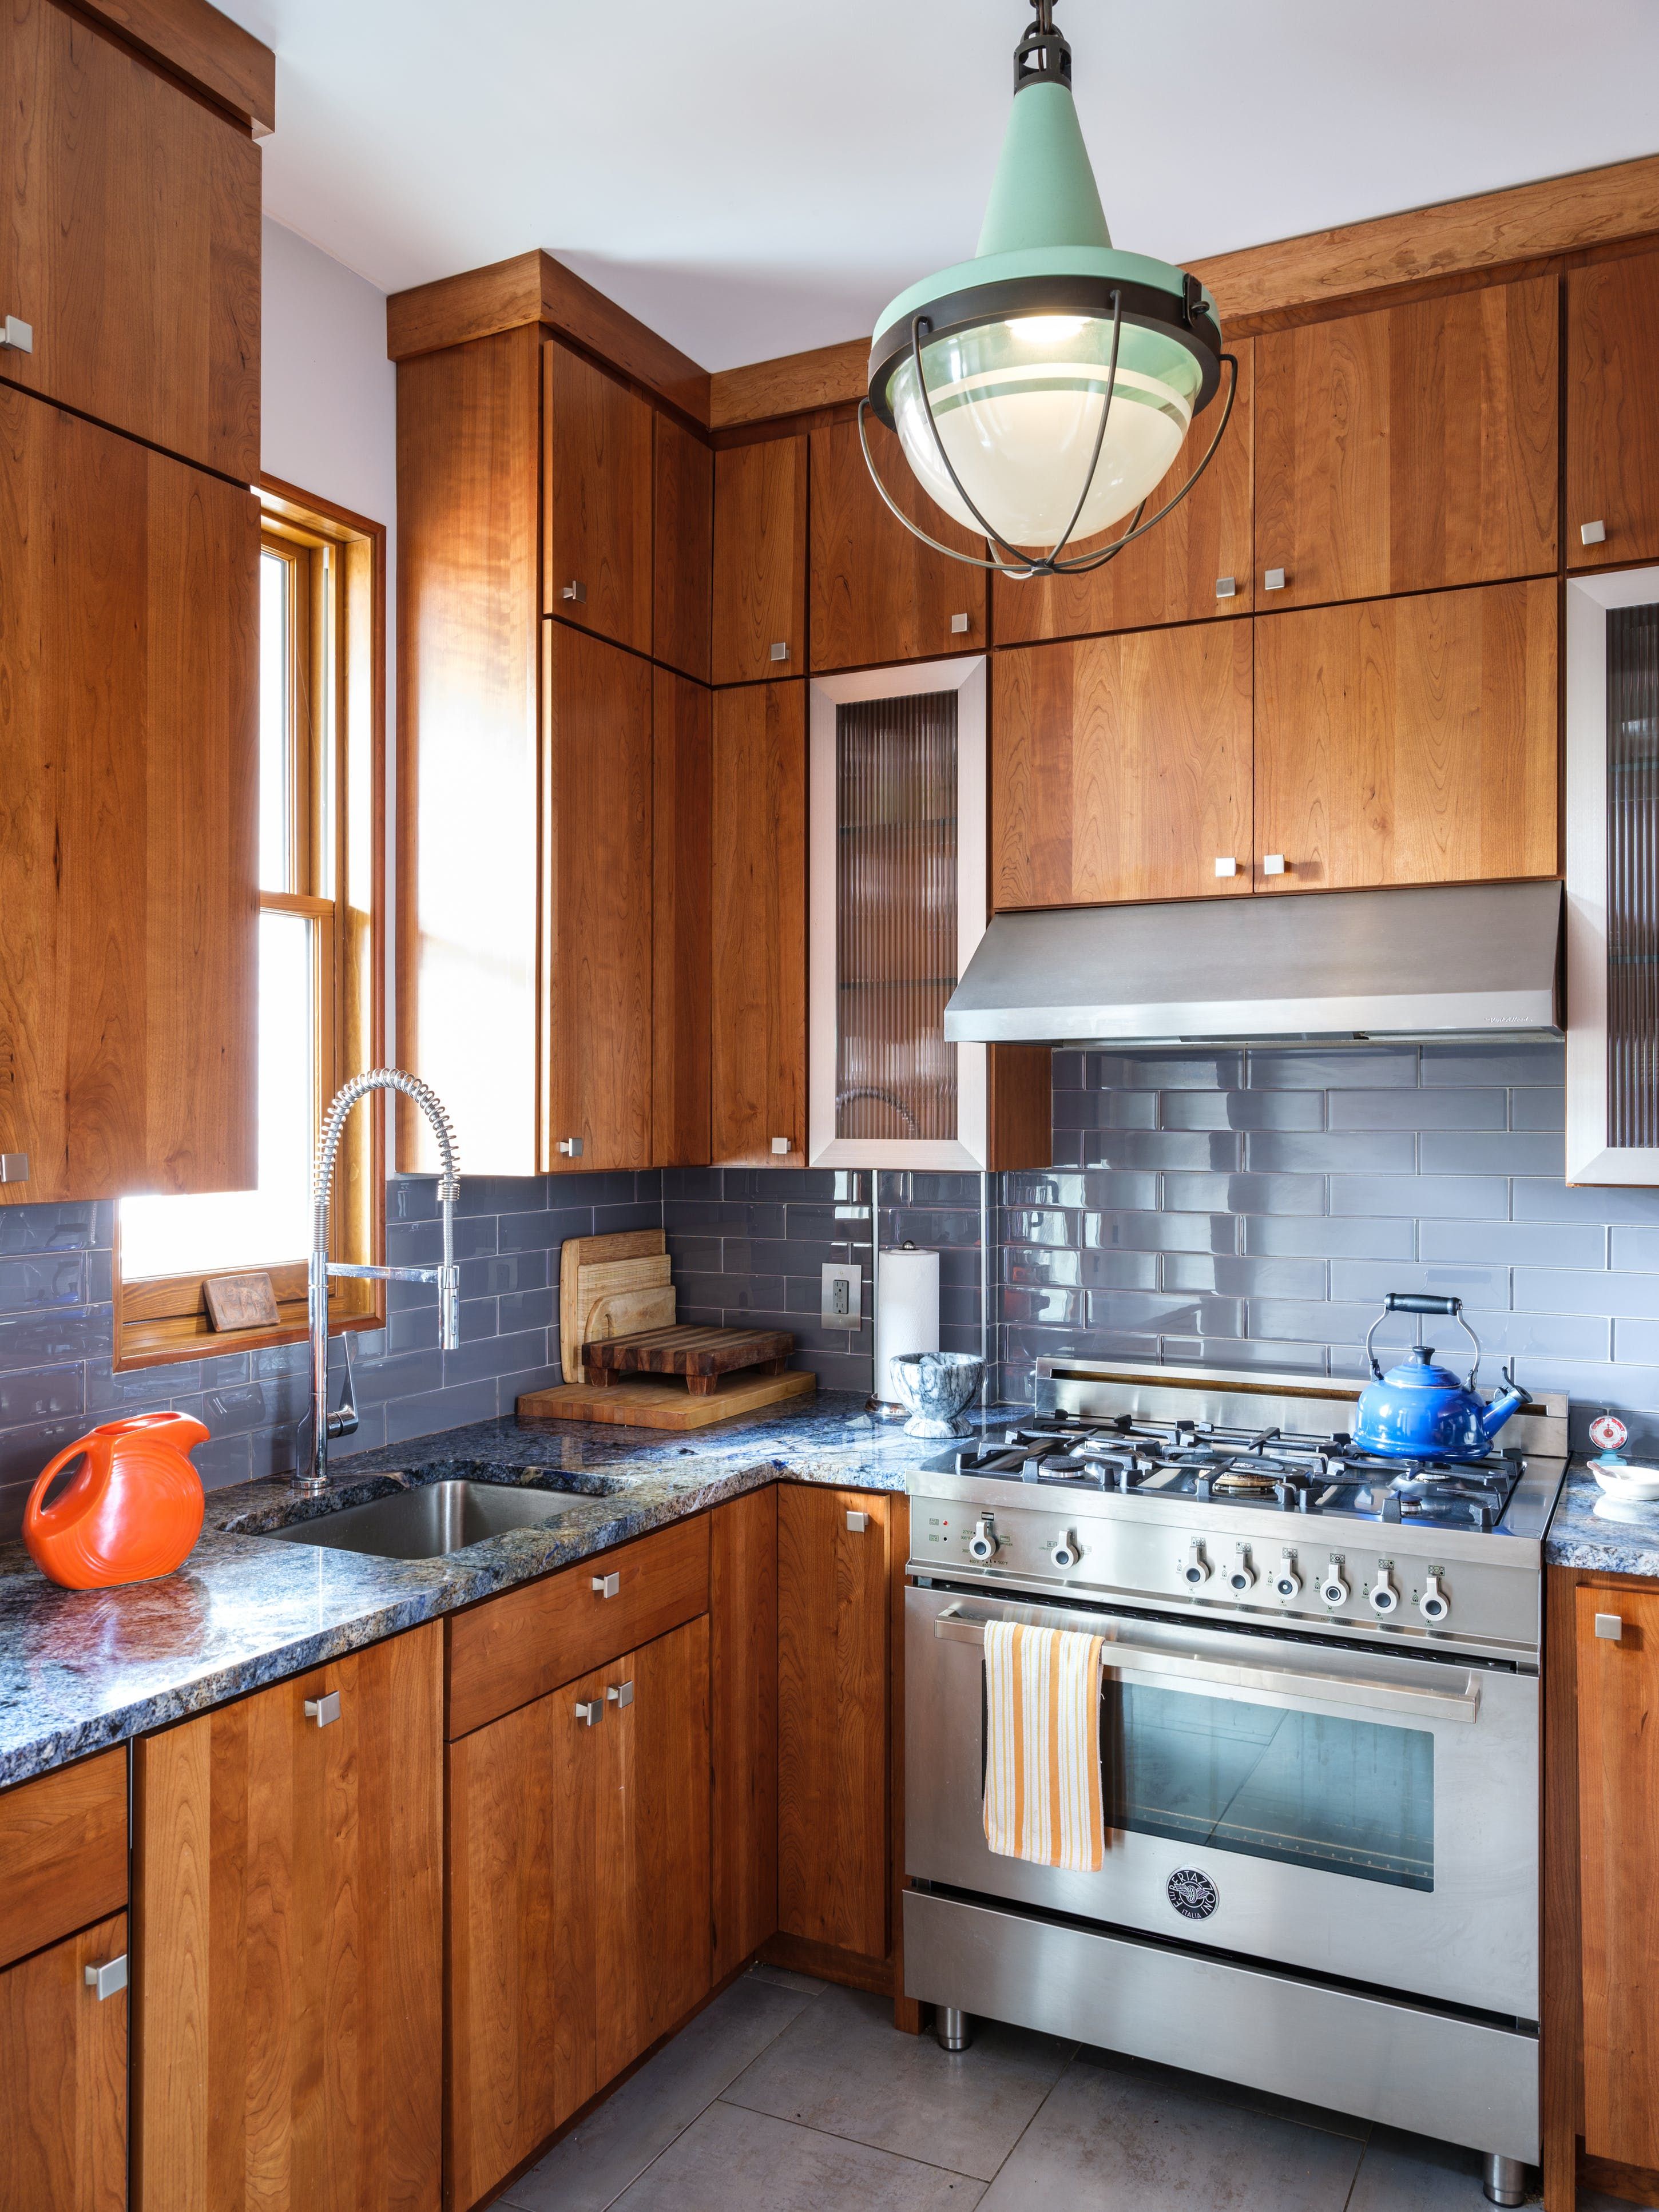 Dark Kitchen Backsplashes, What Color Tile Goes With Light Oak Cabinets